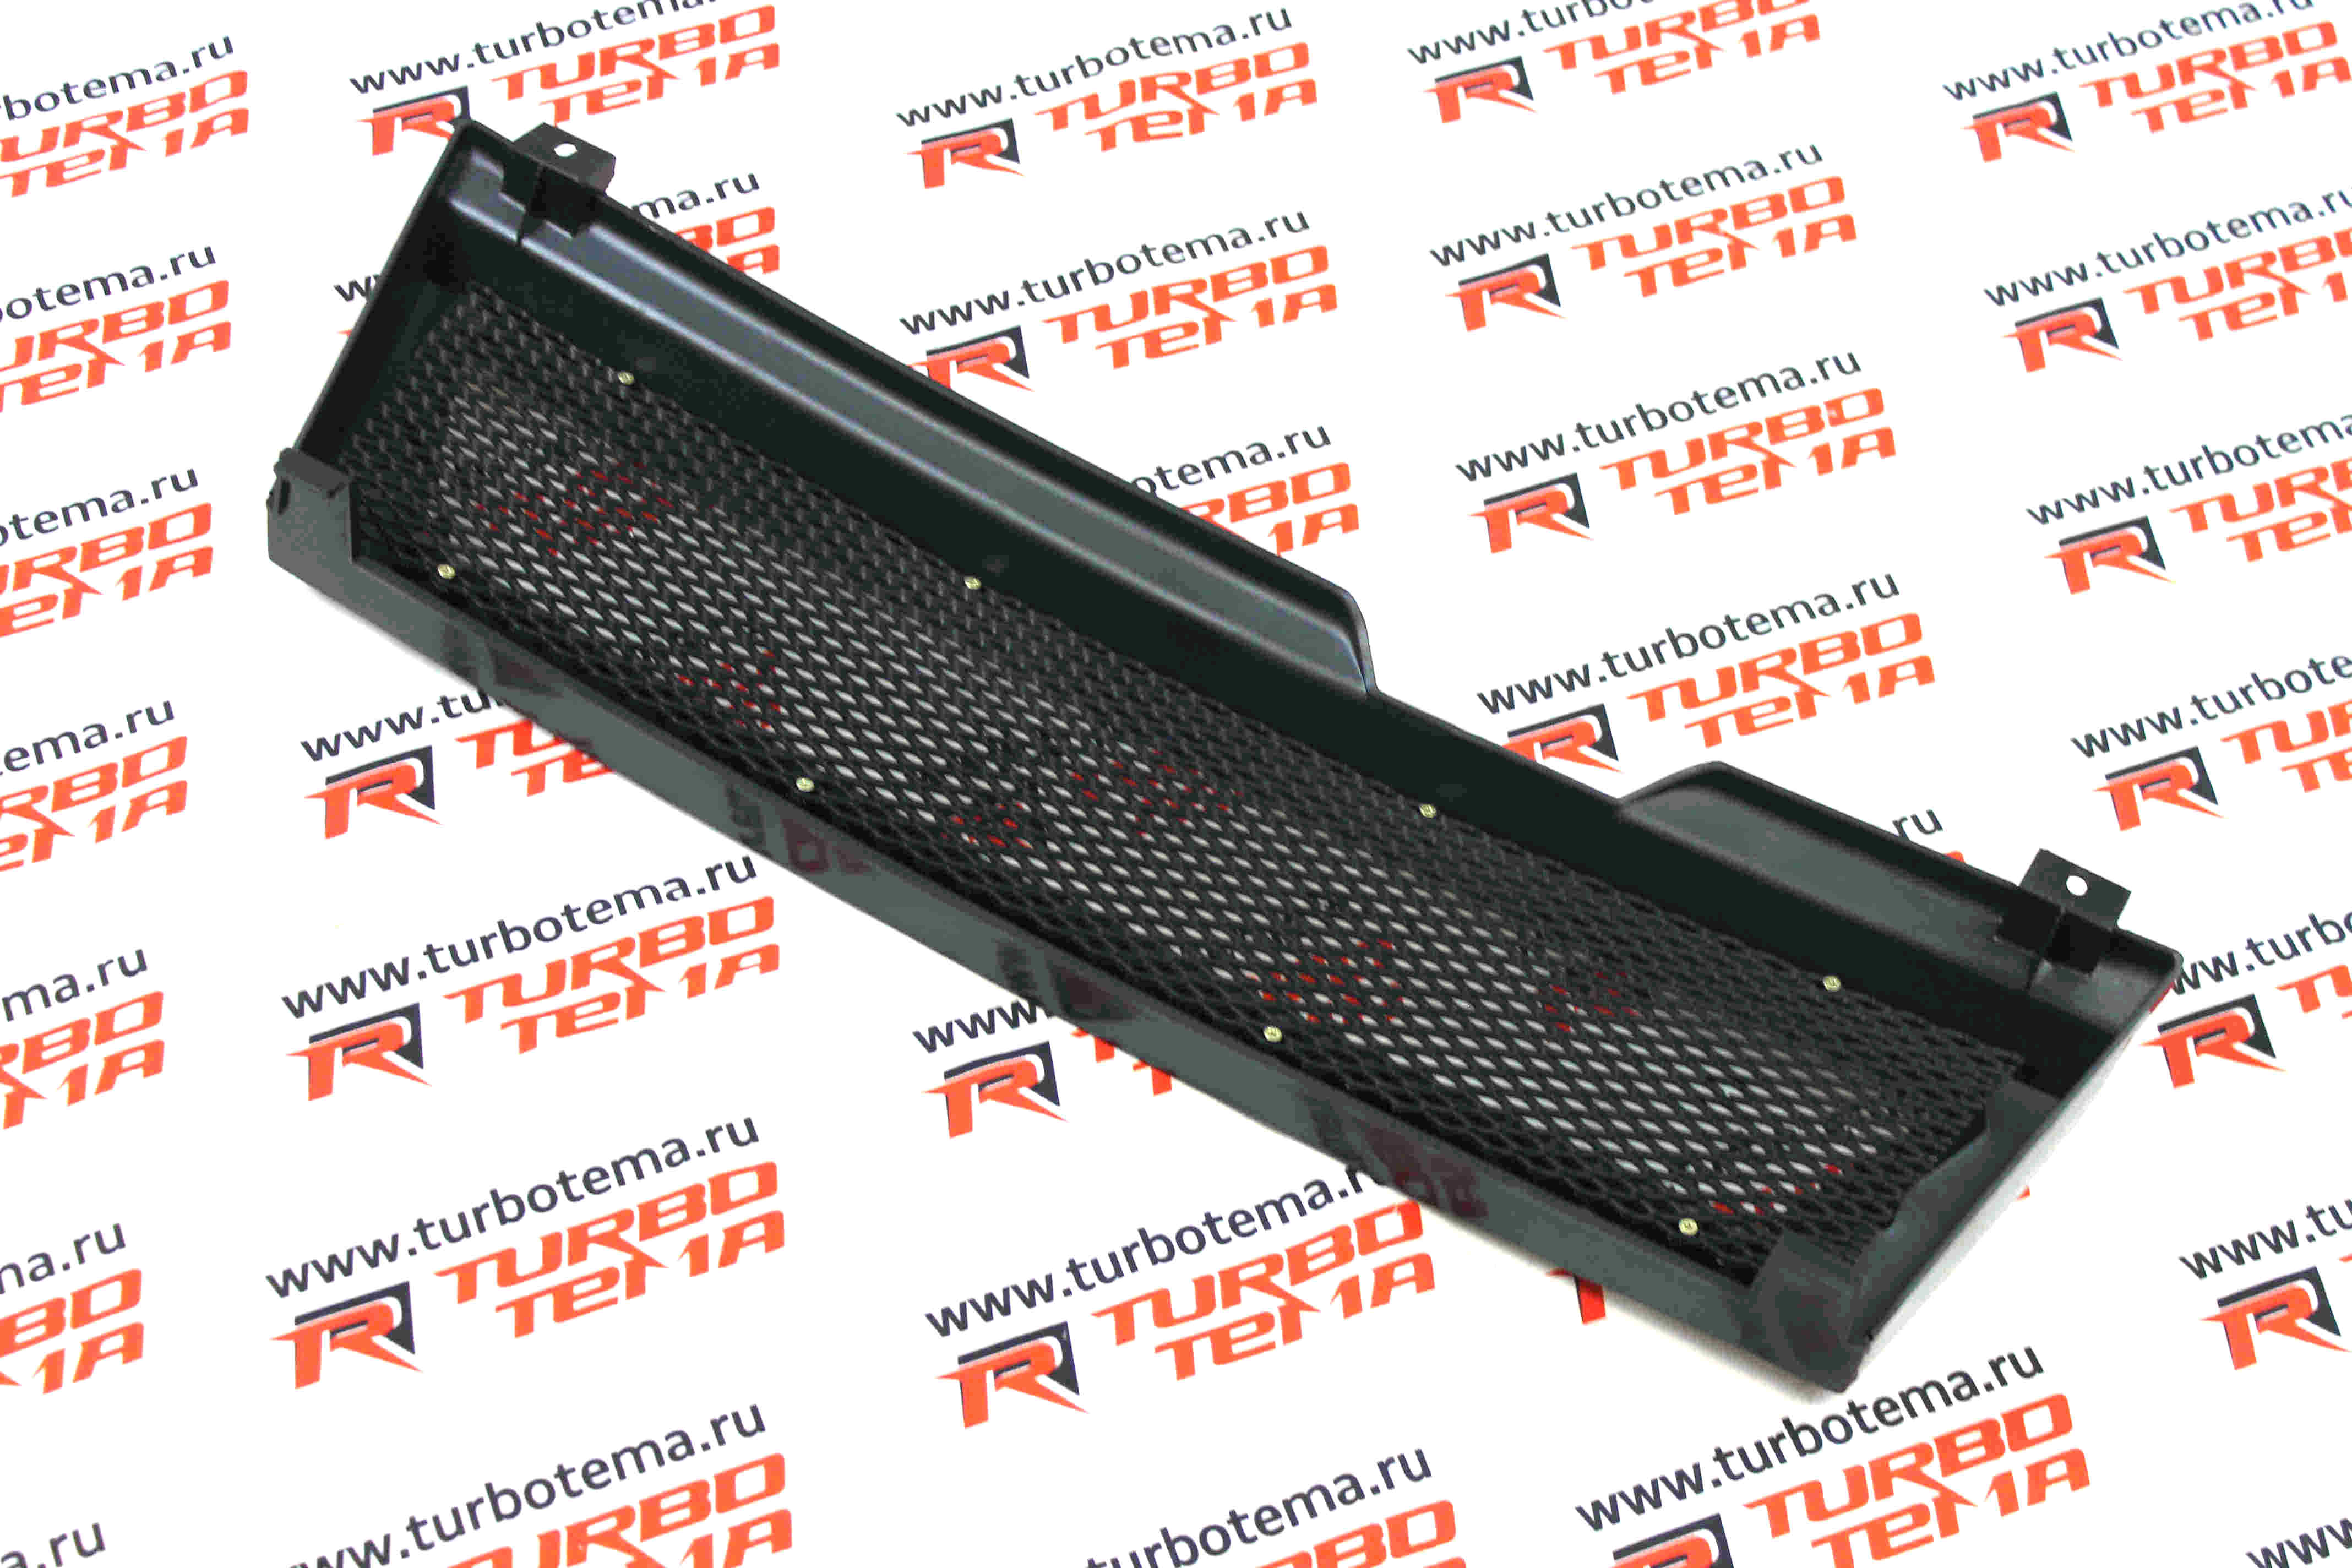 Решетка радиатора для а/м ВАЗ 2108-09, 21099, тюнинг (сетка). Фото �4